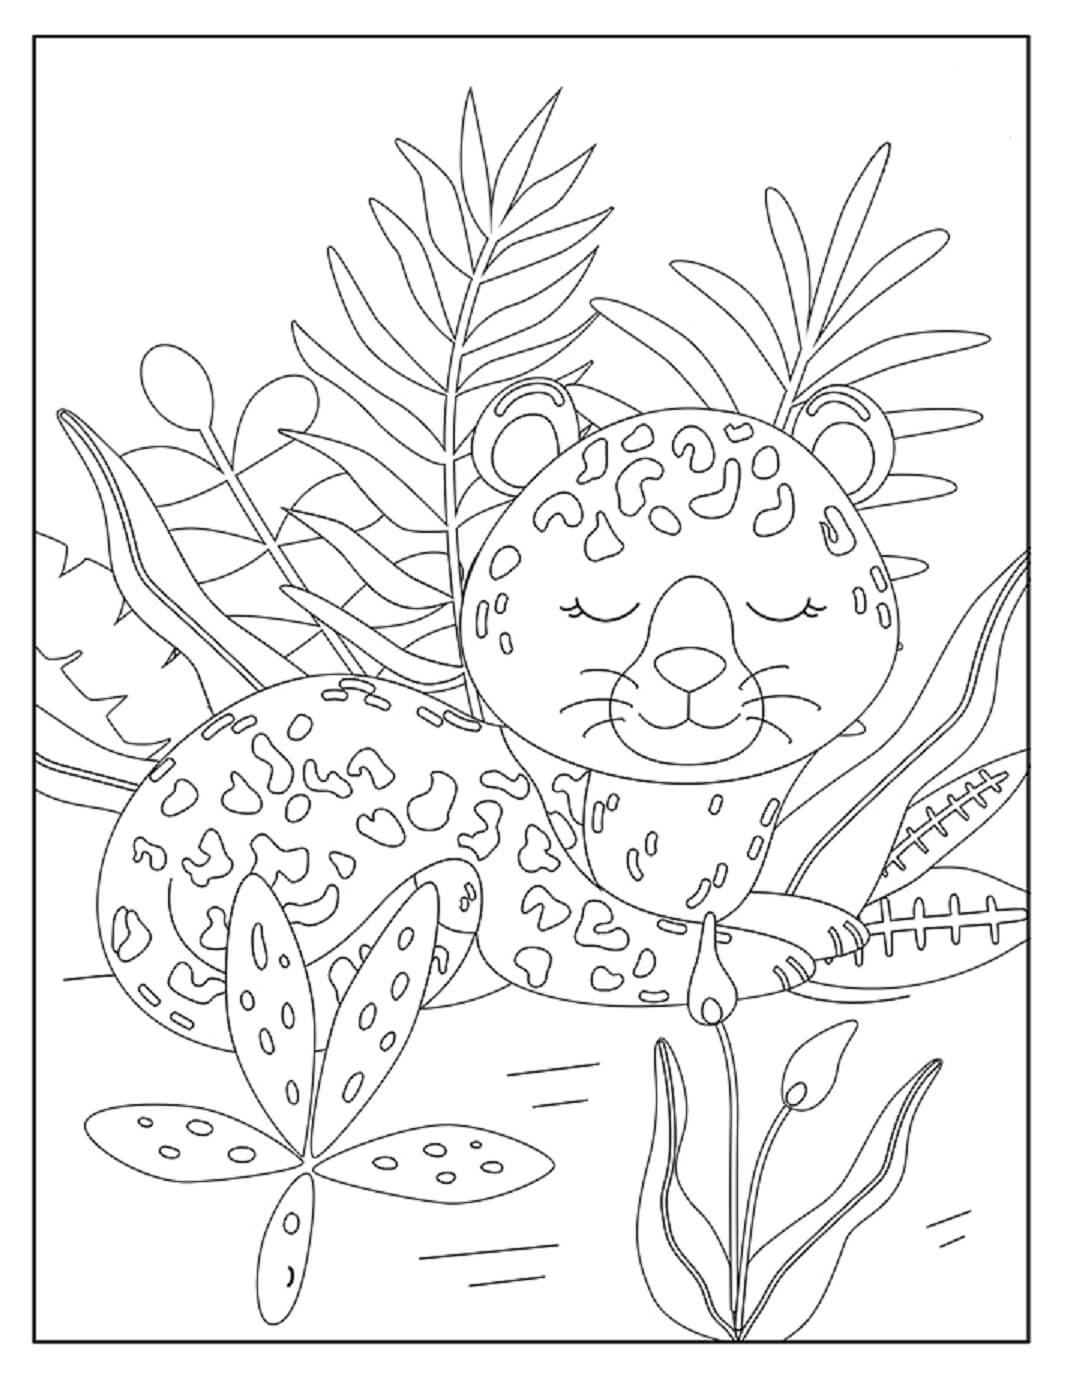 Jaguar Com Folhas E Flores para colorir